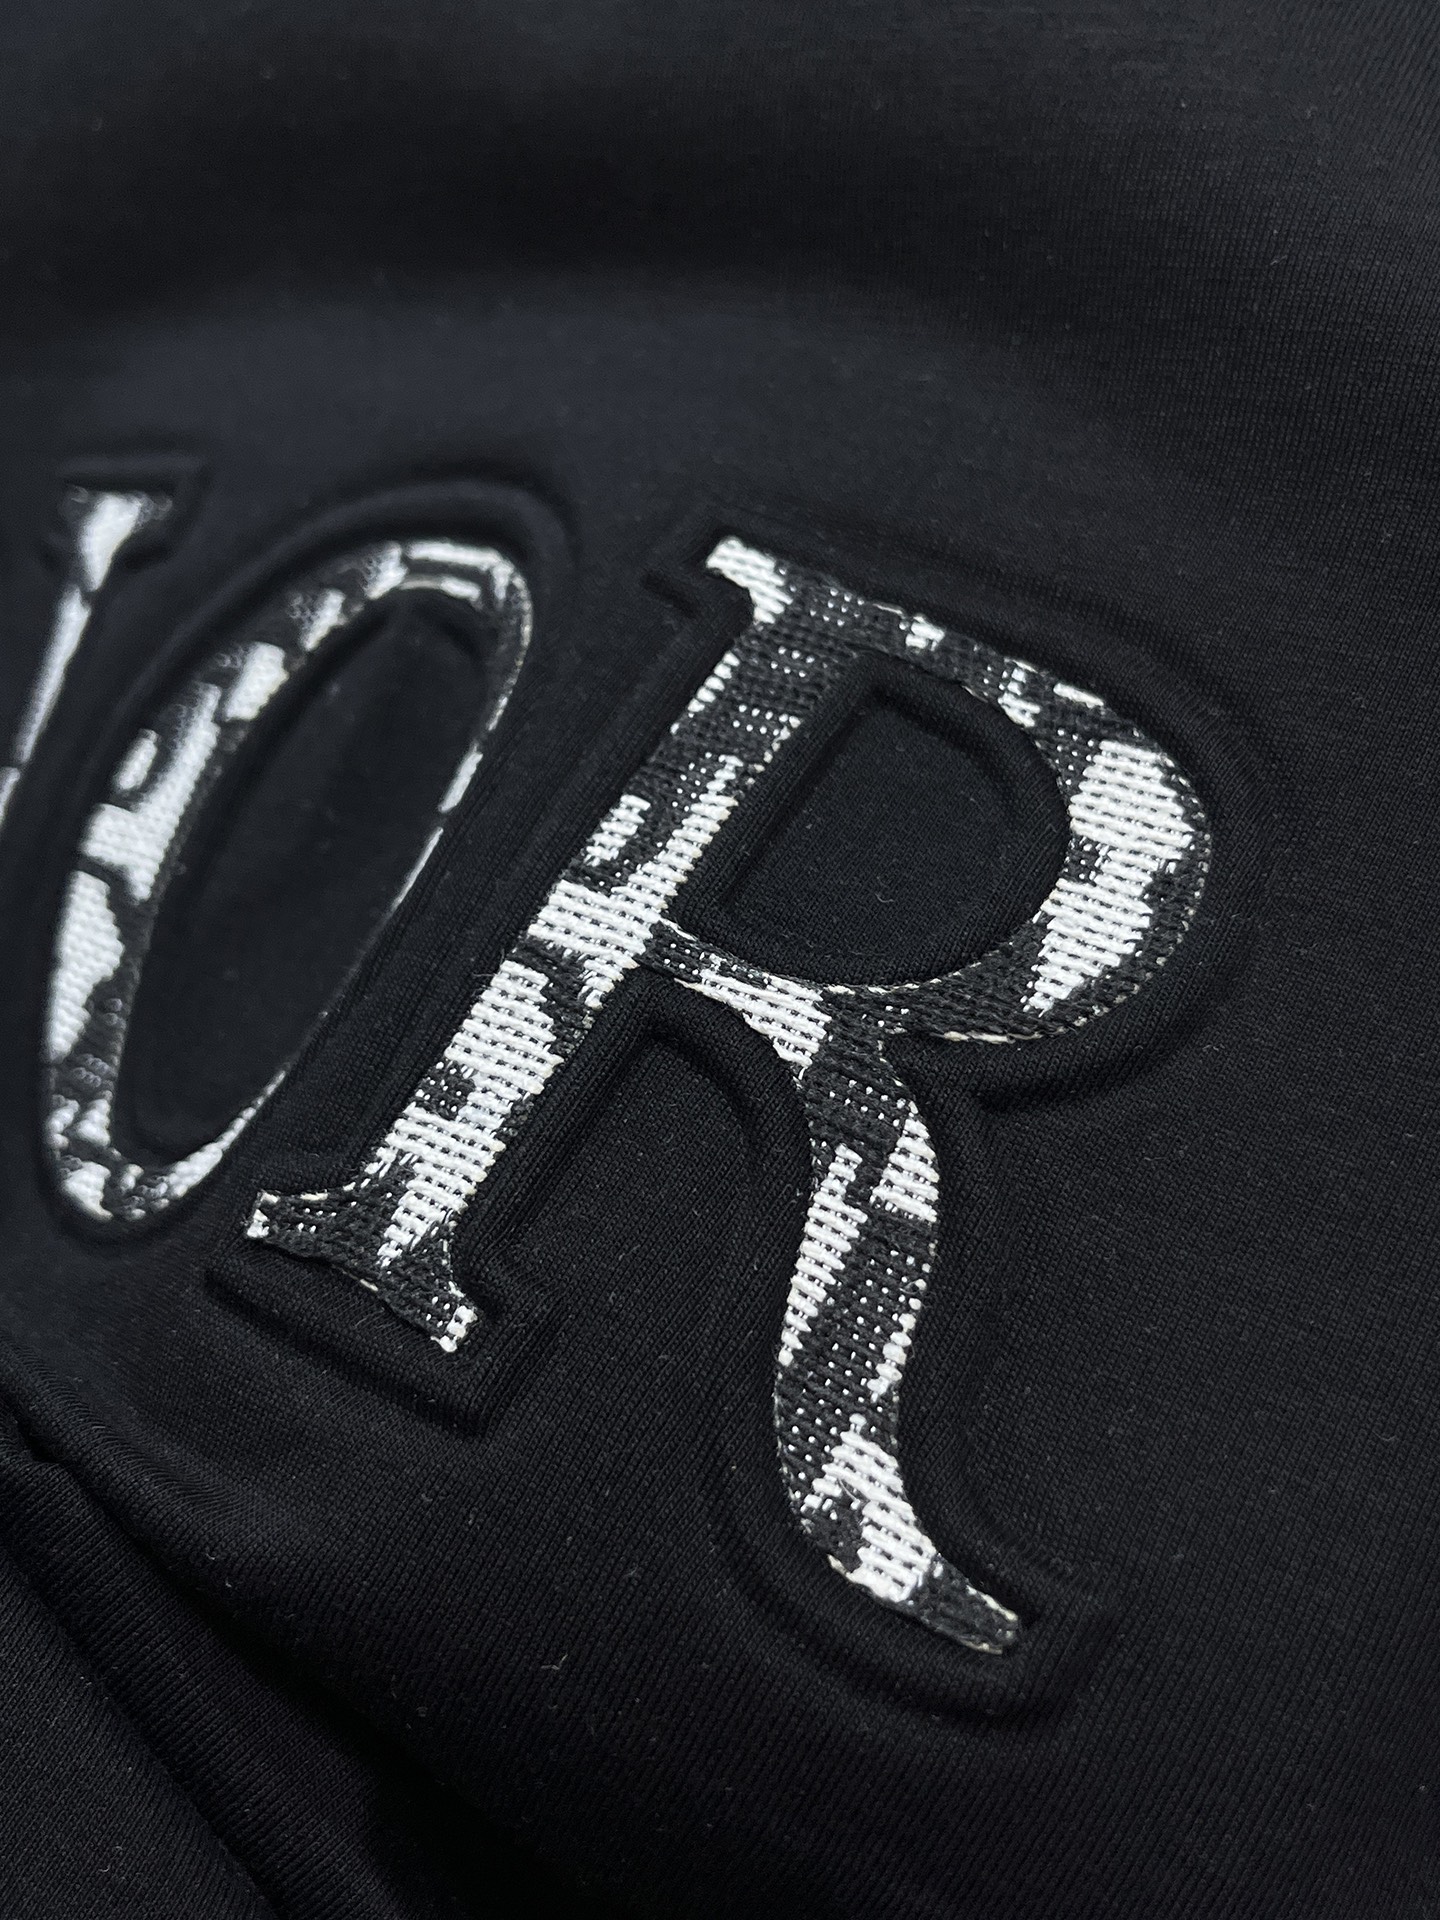 迪奥24SS春夏新款短袖T恤定制面料质地丝光棉面料采用原厂弹力绒面亲肤面料高弹力好伸缩采用品牌Logo标